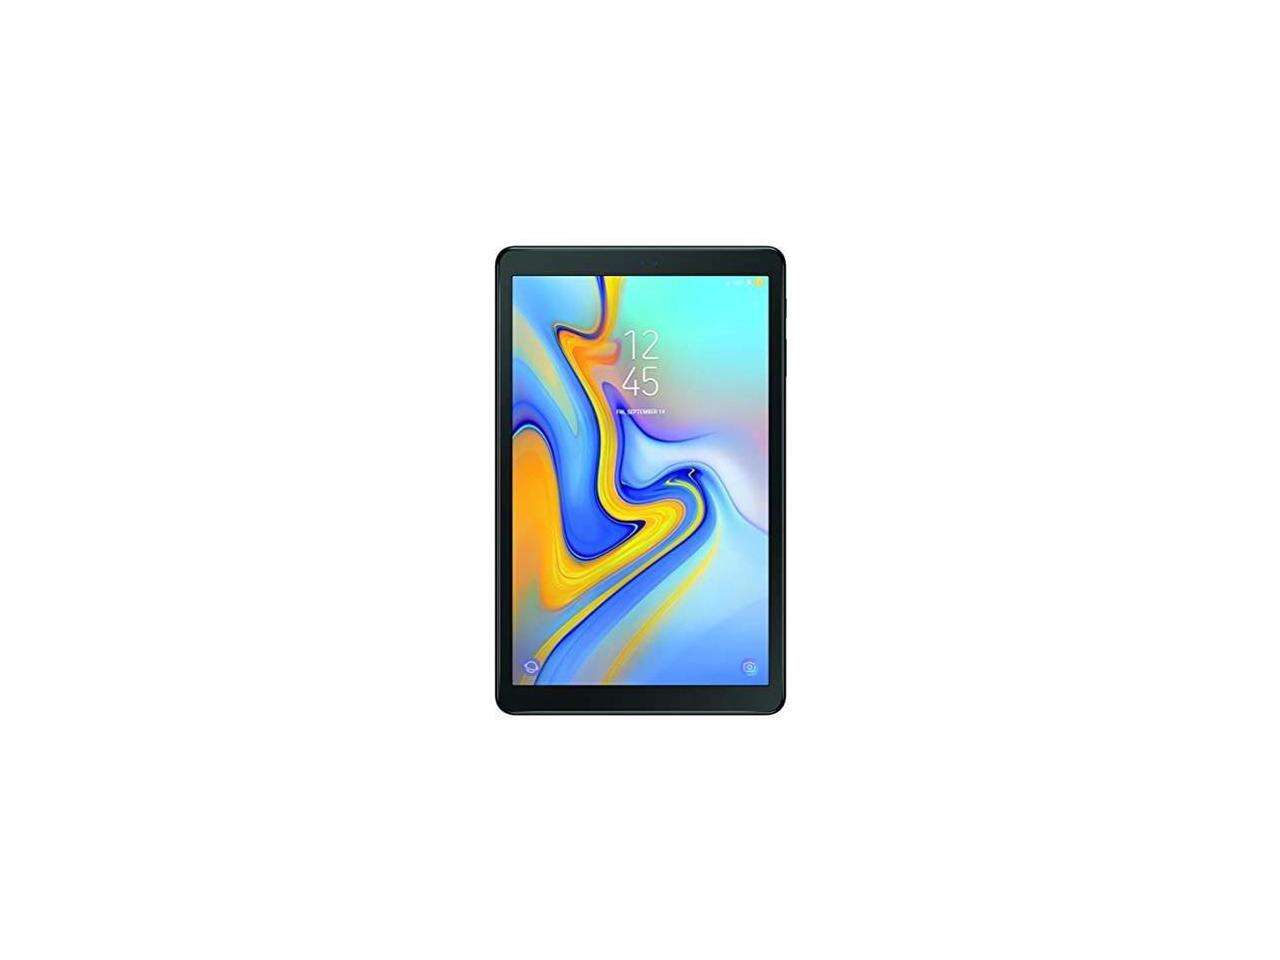 SAMSUNG Galaxy Tab A SM-T590NZKAXAR Qualcomm Snapdragon 450 (1.80 GHz) 3 GB Memory 32 GB Flash Storage 10.5